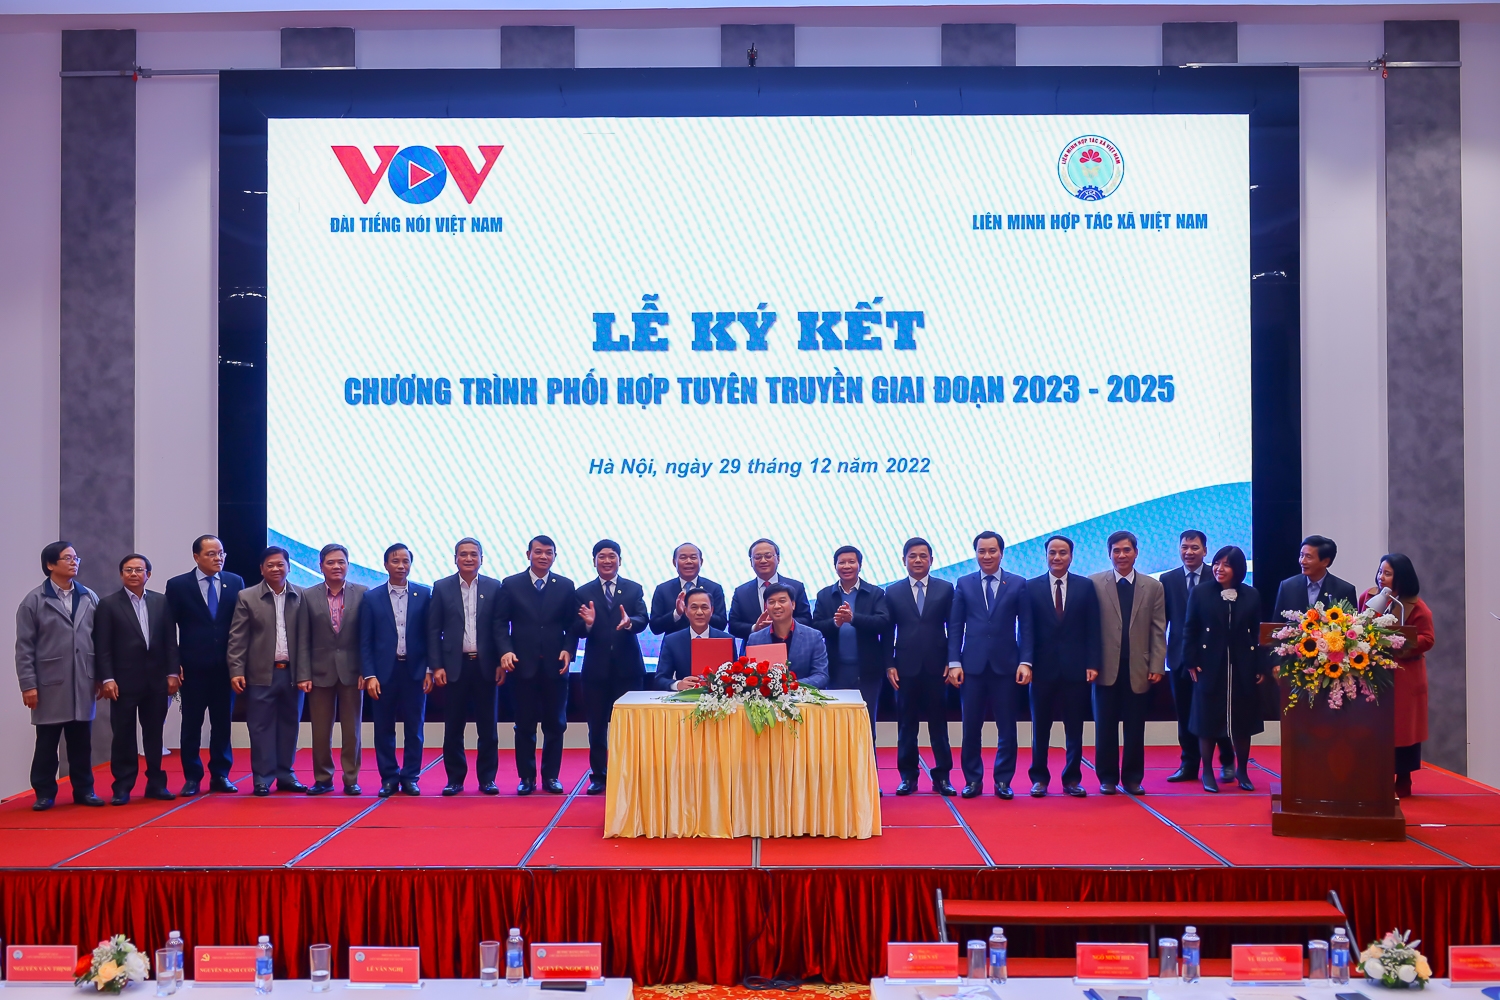 Liên minh HTX Việt Nam và Đài Tiếng nói Việt Nam ký kết Chương trình phối hợp